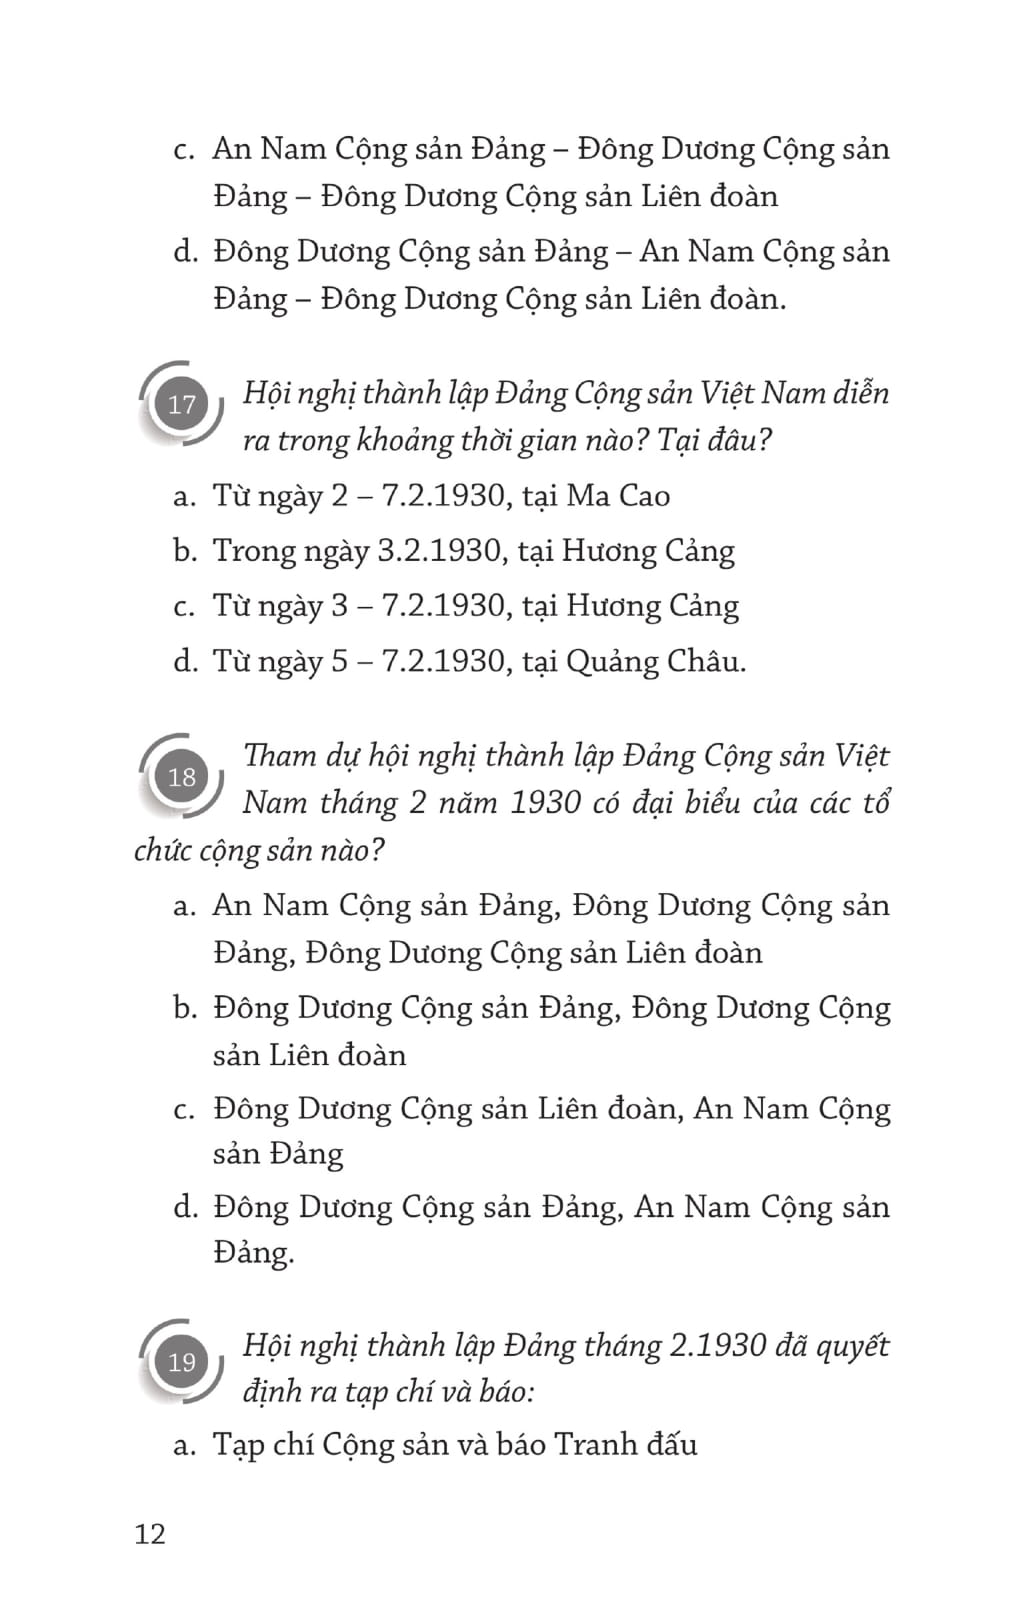 Sách Những Câu Đố Trắc Nghiệm Về Lịch Sử Dân Tộc Và Lịch Sử Cách Mạng Việt Nam Từ Năm 1930 Đến Nay